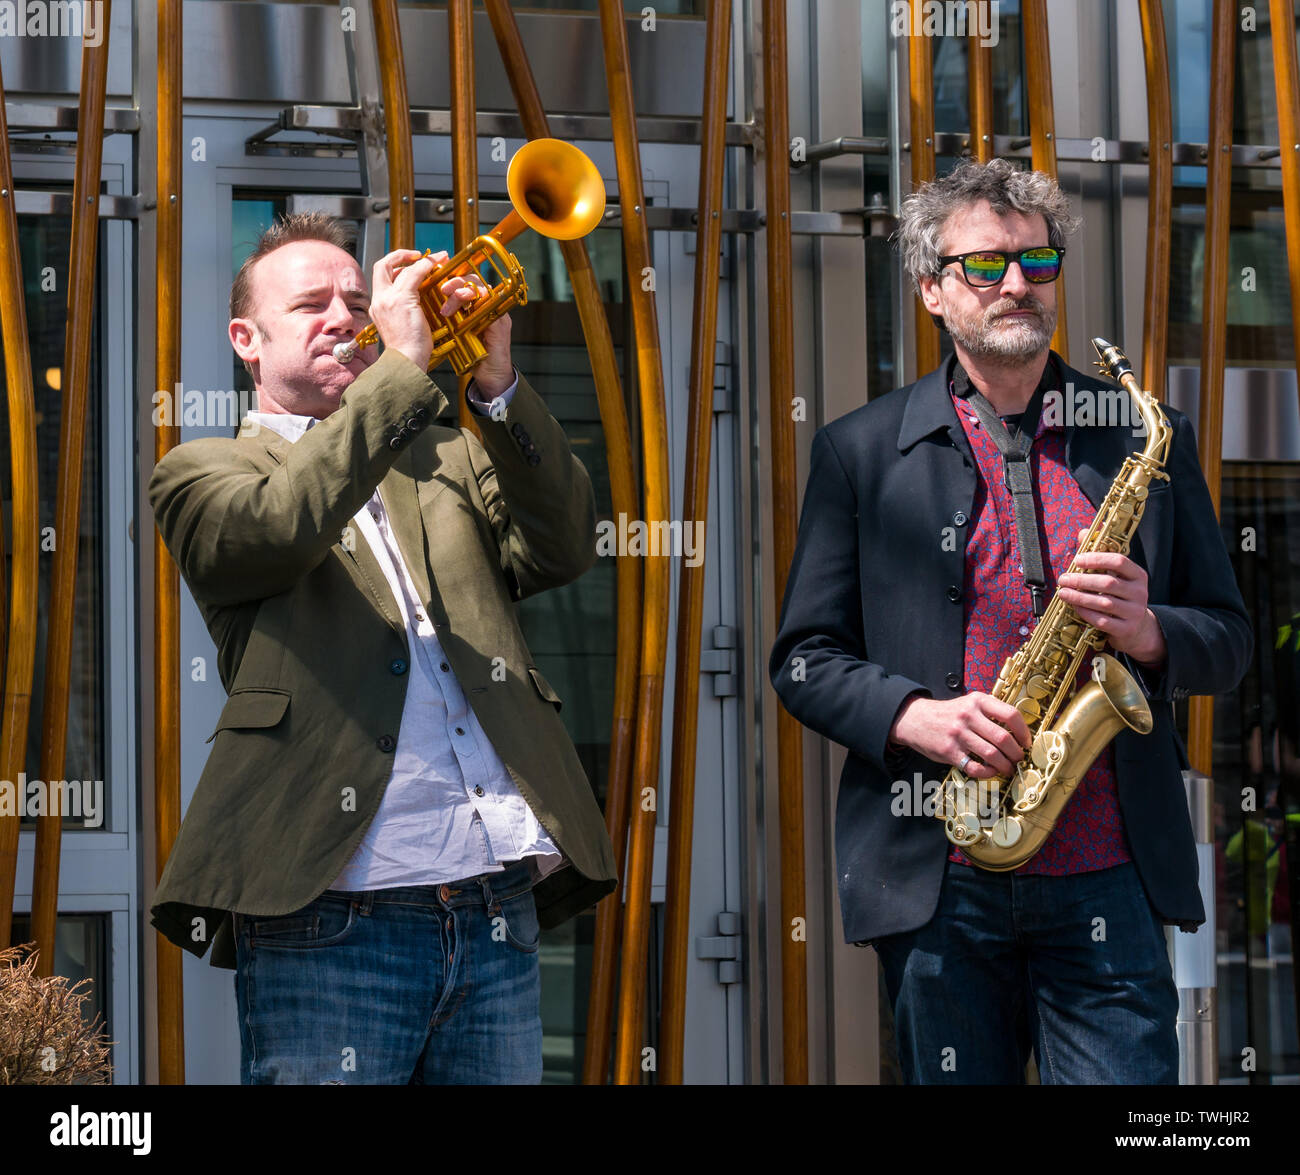 Rébellion Extinction Changement climatique & trompette protester contre les joueurs de saxophone jazz, Parlement de l'Écosse, Édimbourg, Écosse, Royaume-Uni Banque D'Images